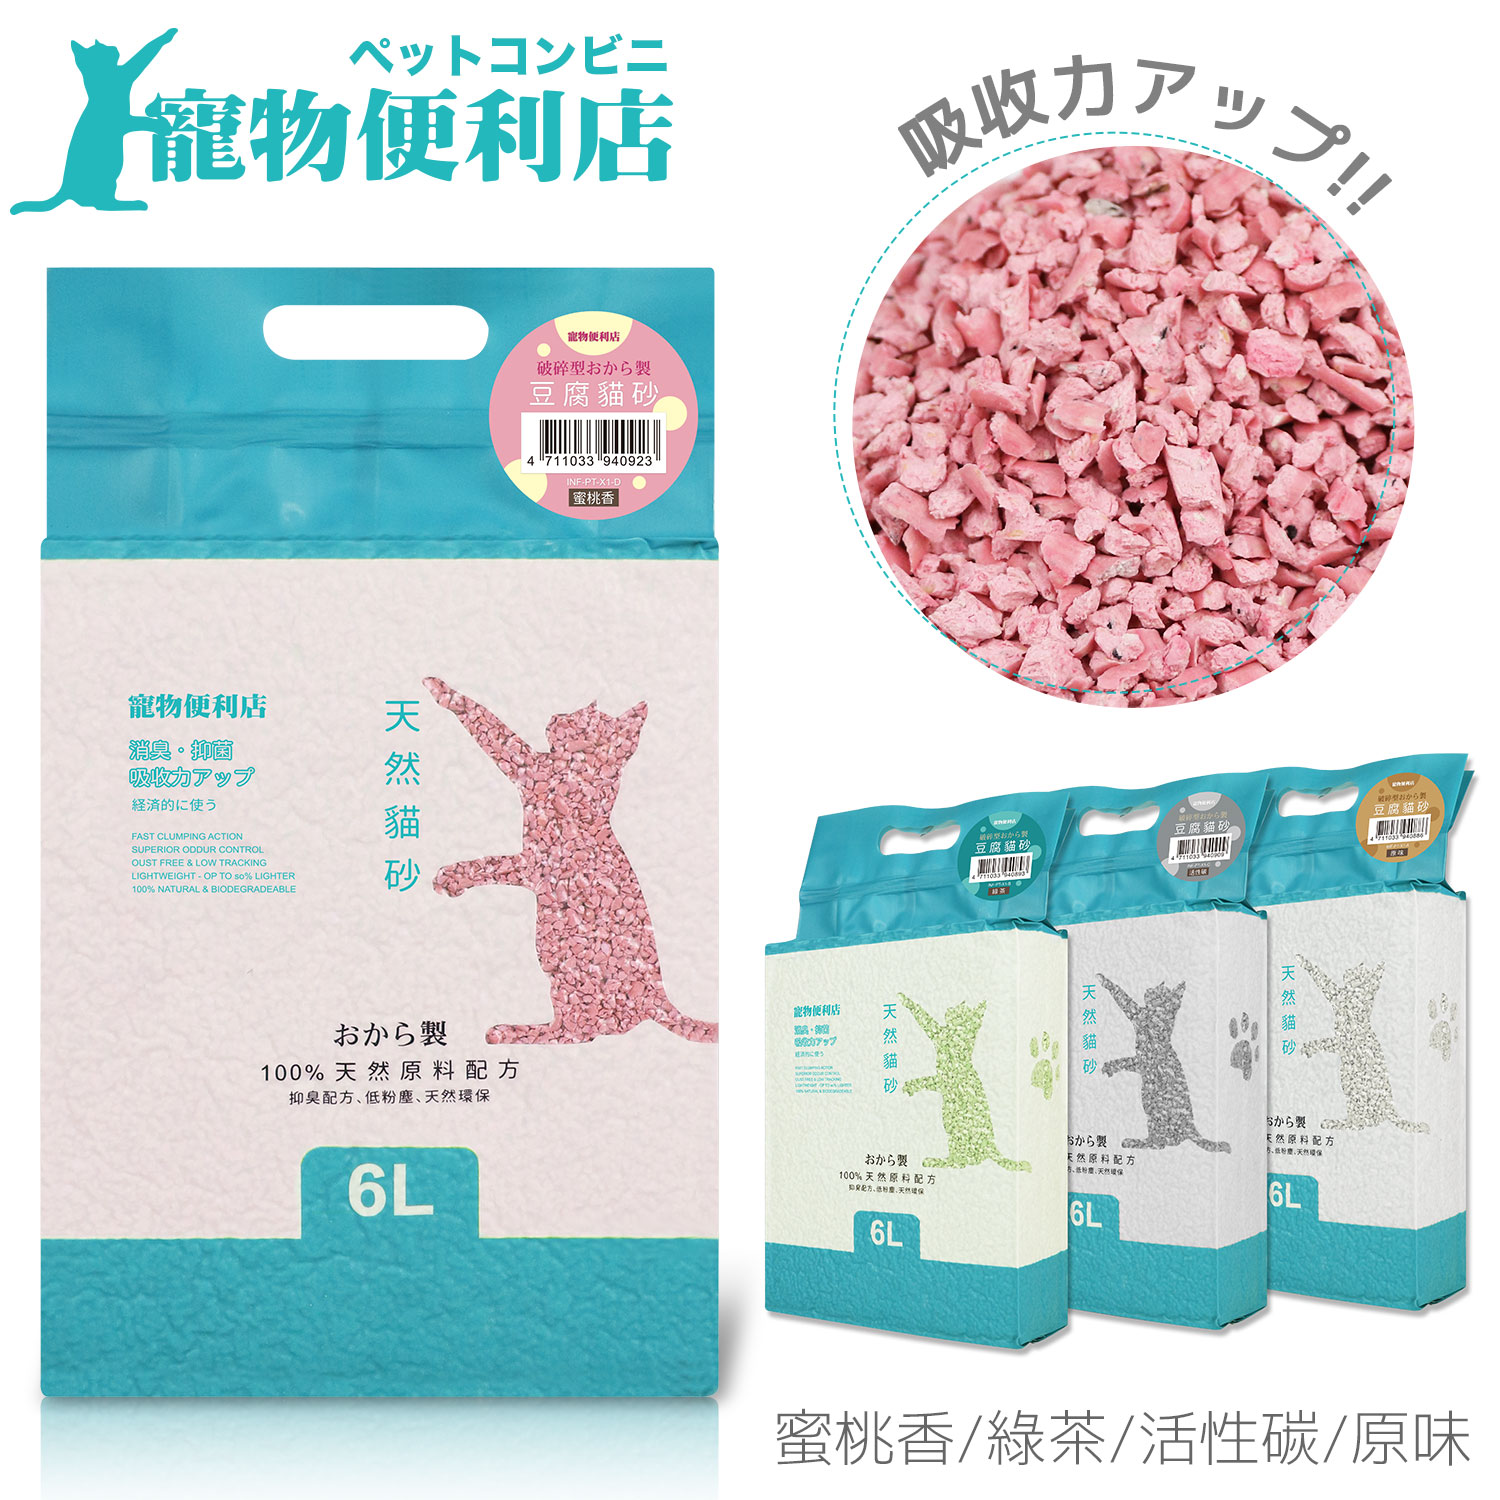 寵物便利店 破碎型豆腐貓砂(6L)